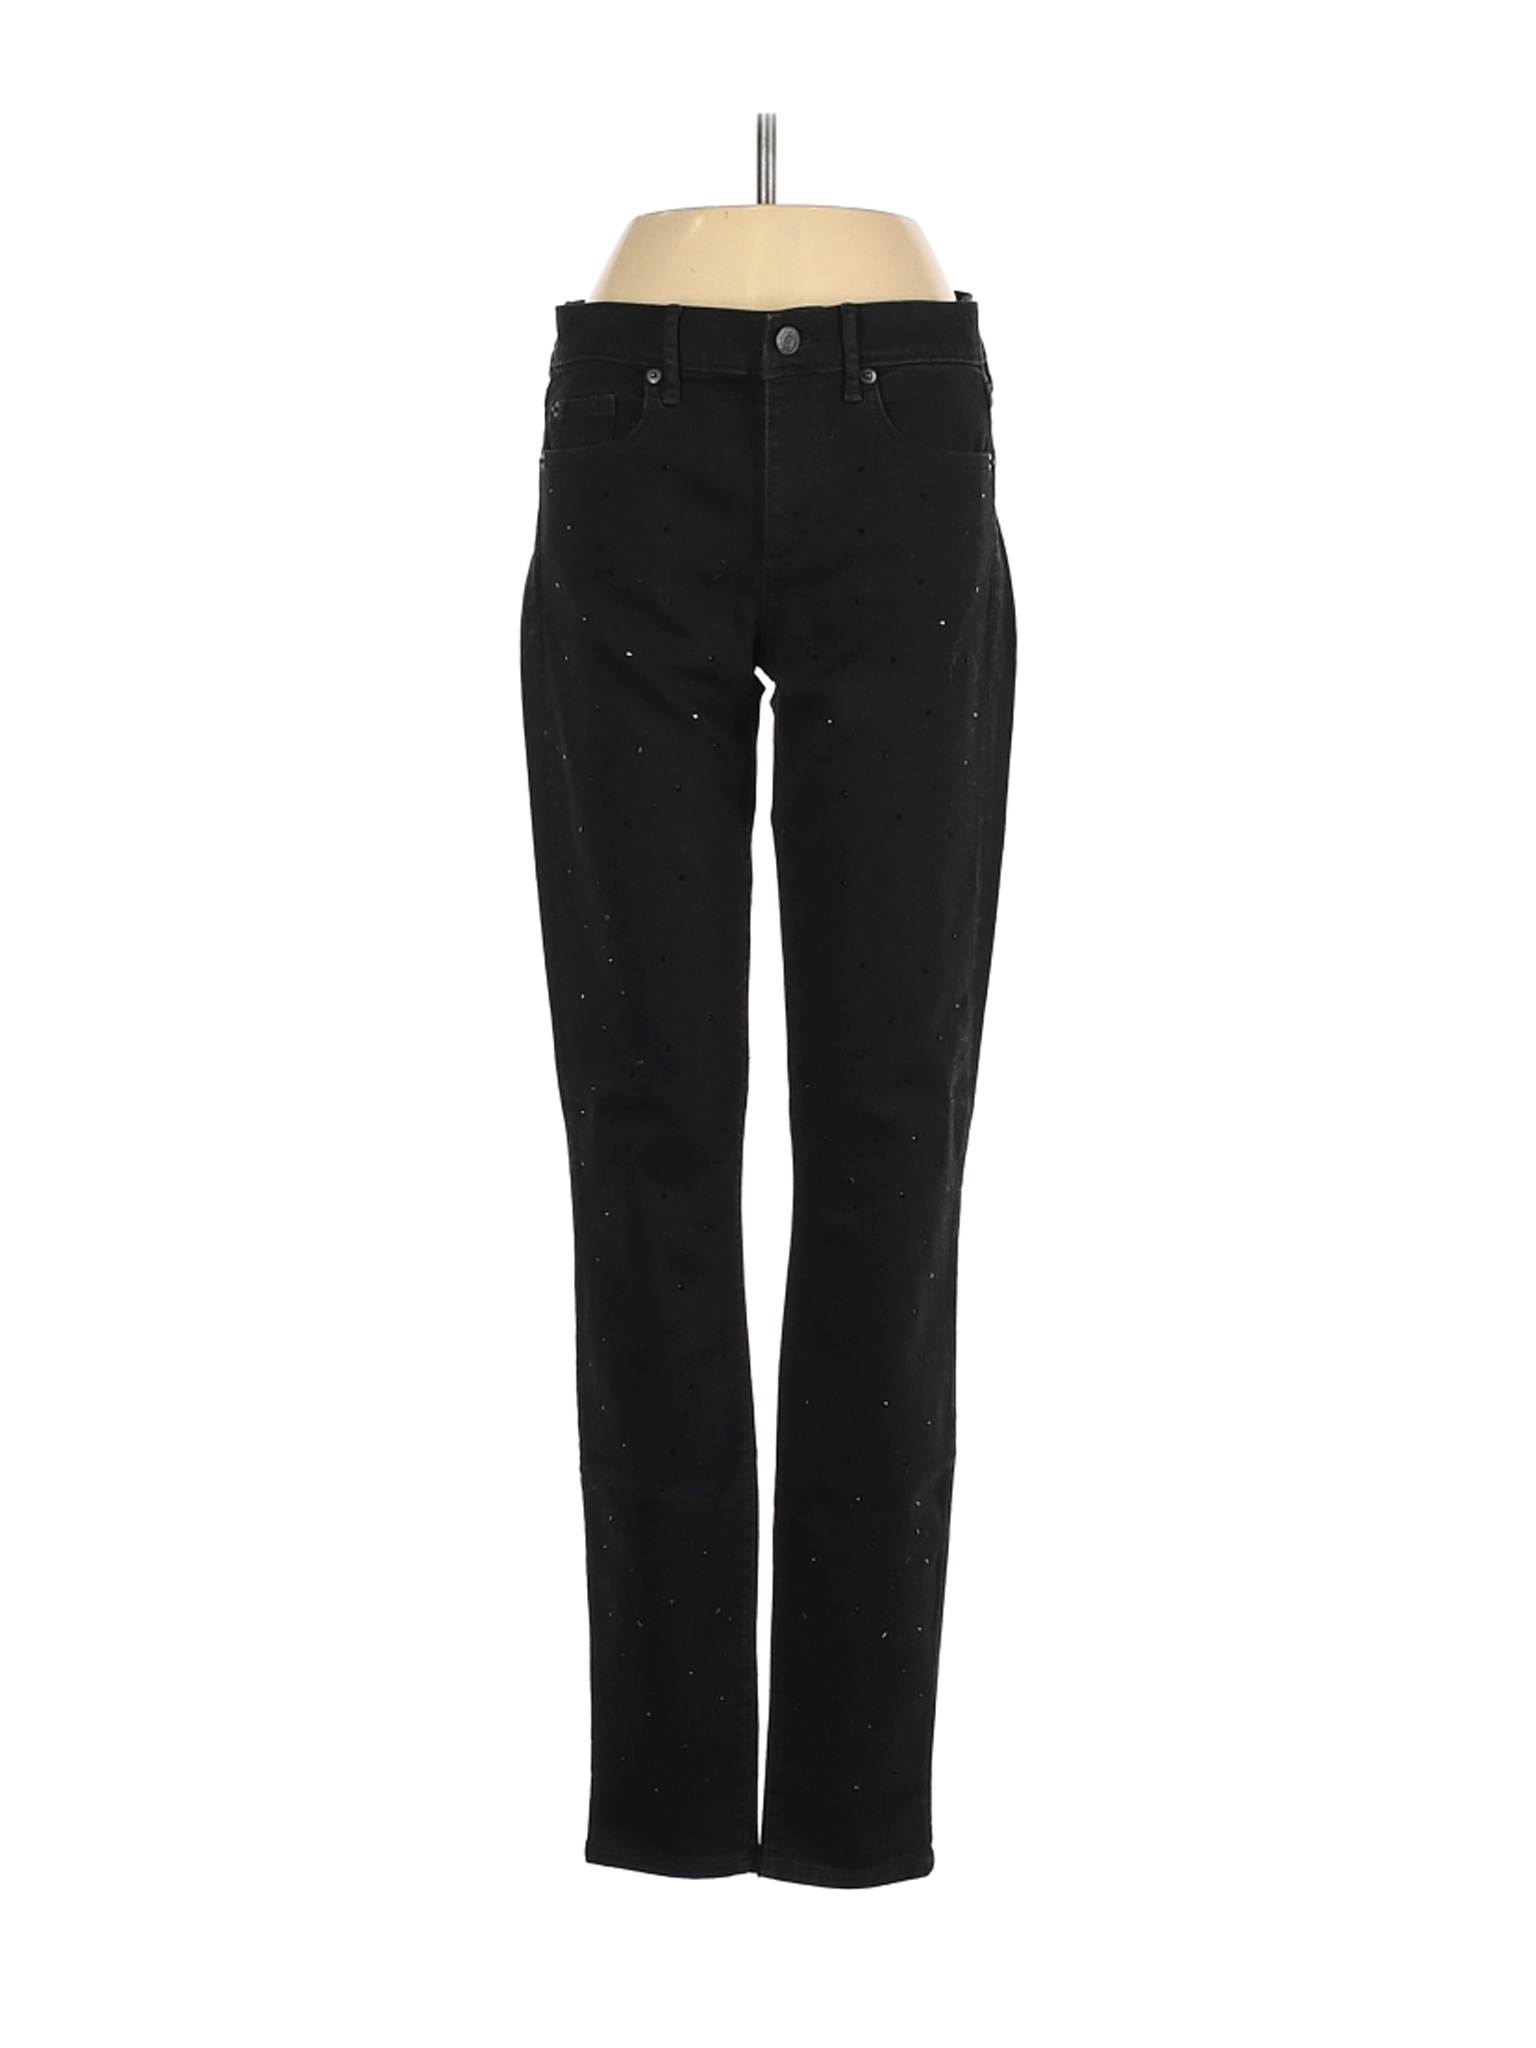 Gap Women Black Jeans 27W | eBay